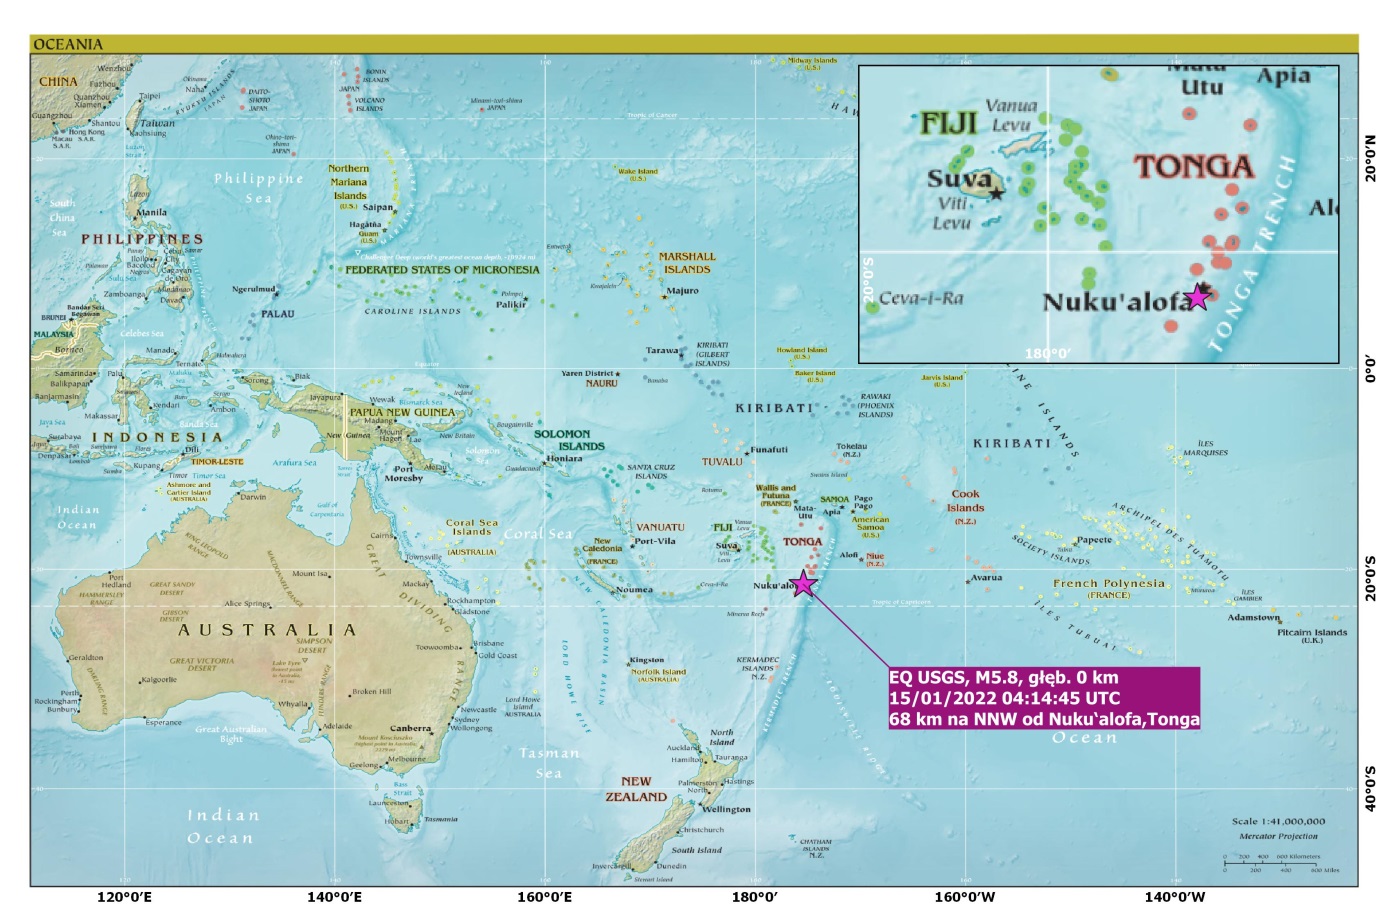 Mapa lokalizacji erupcji wulkanicznej i trzęsienia ziemi w rejonie Wysp Tonga